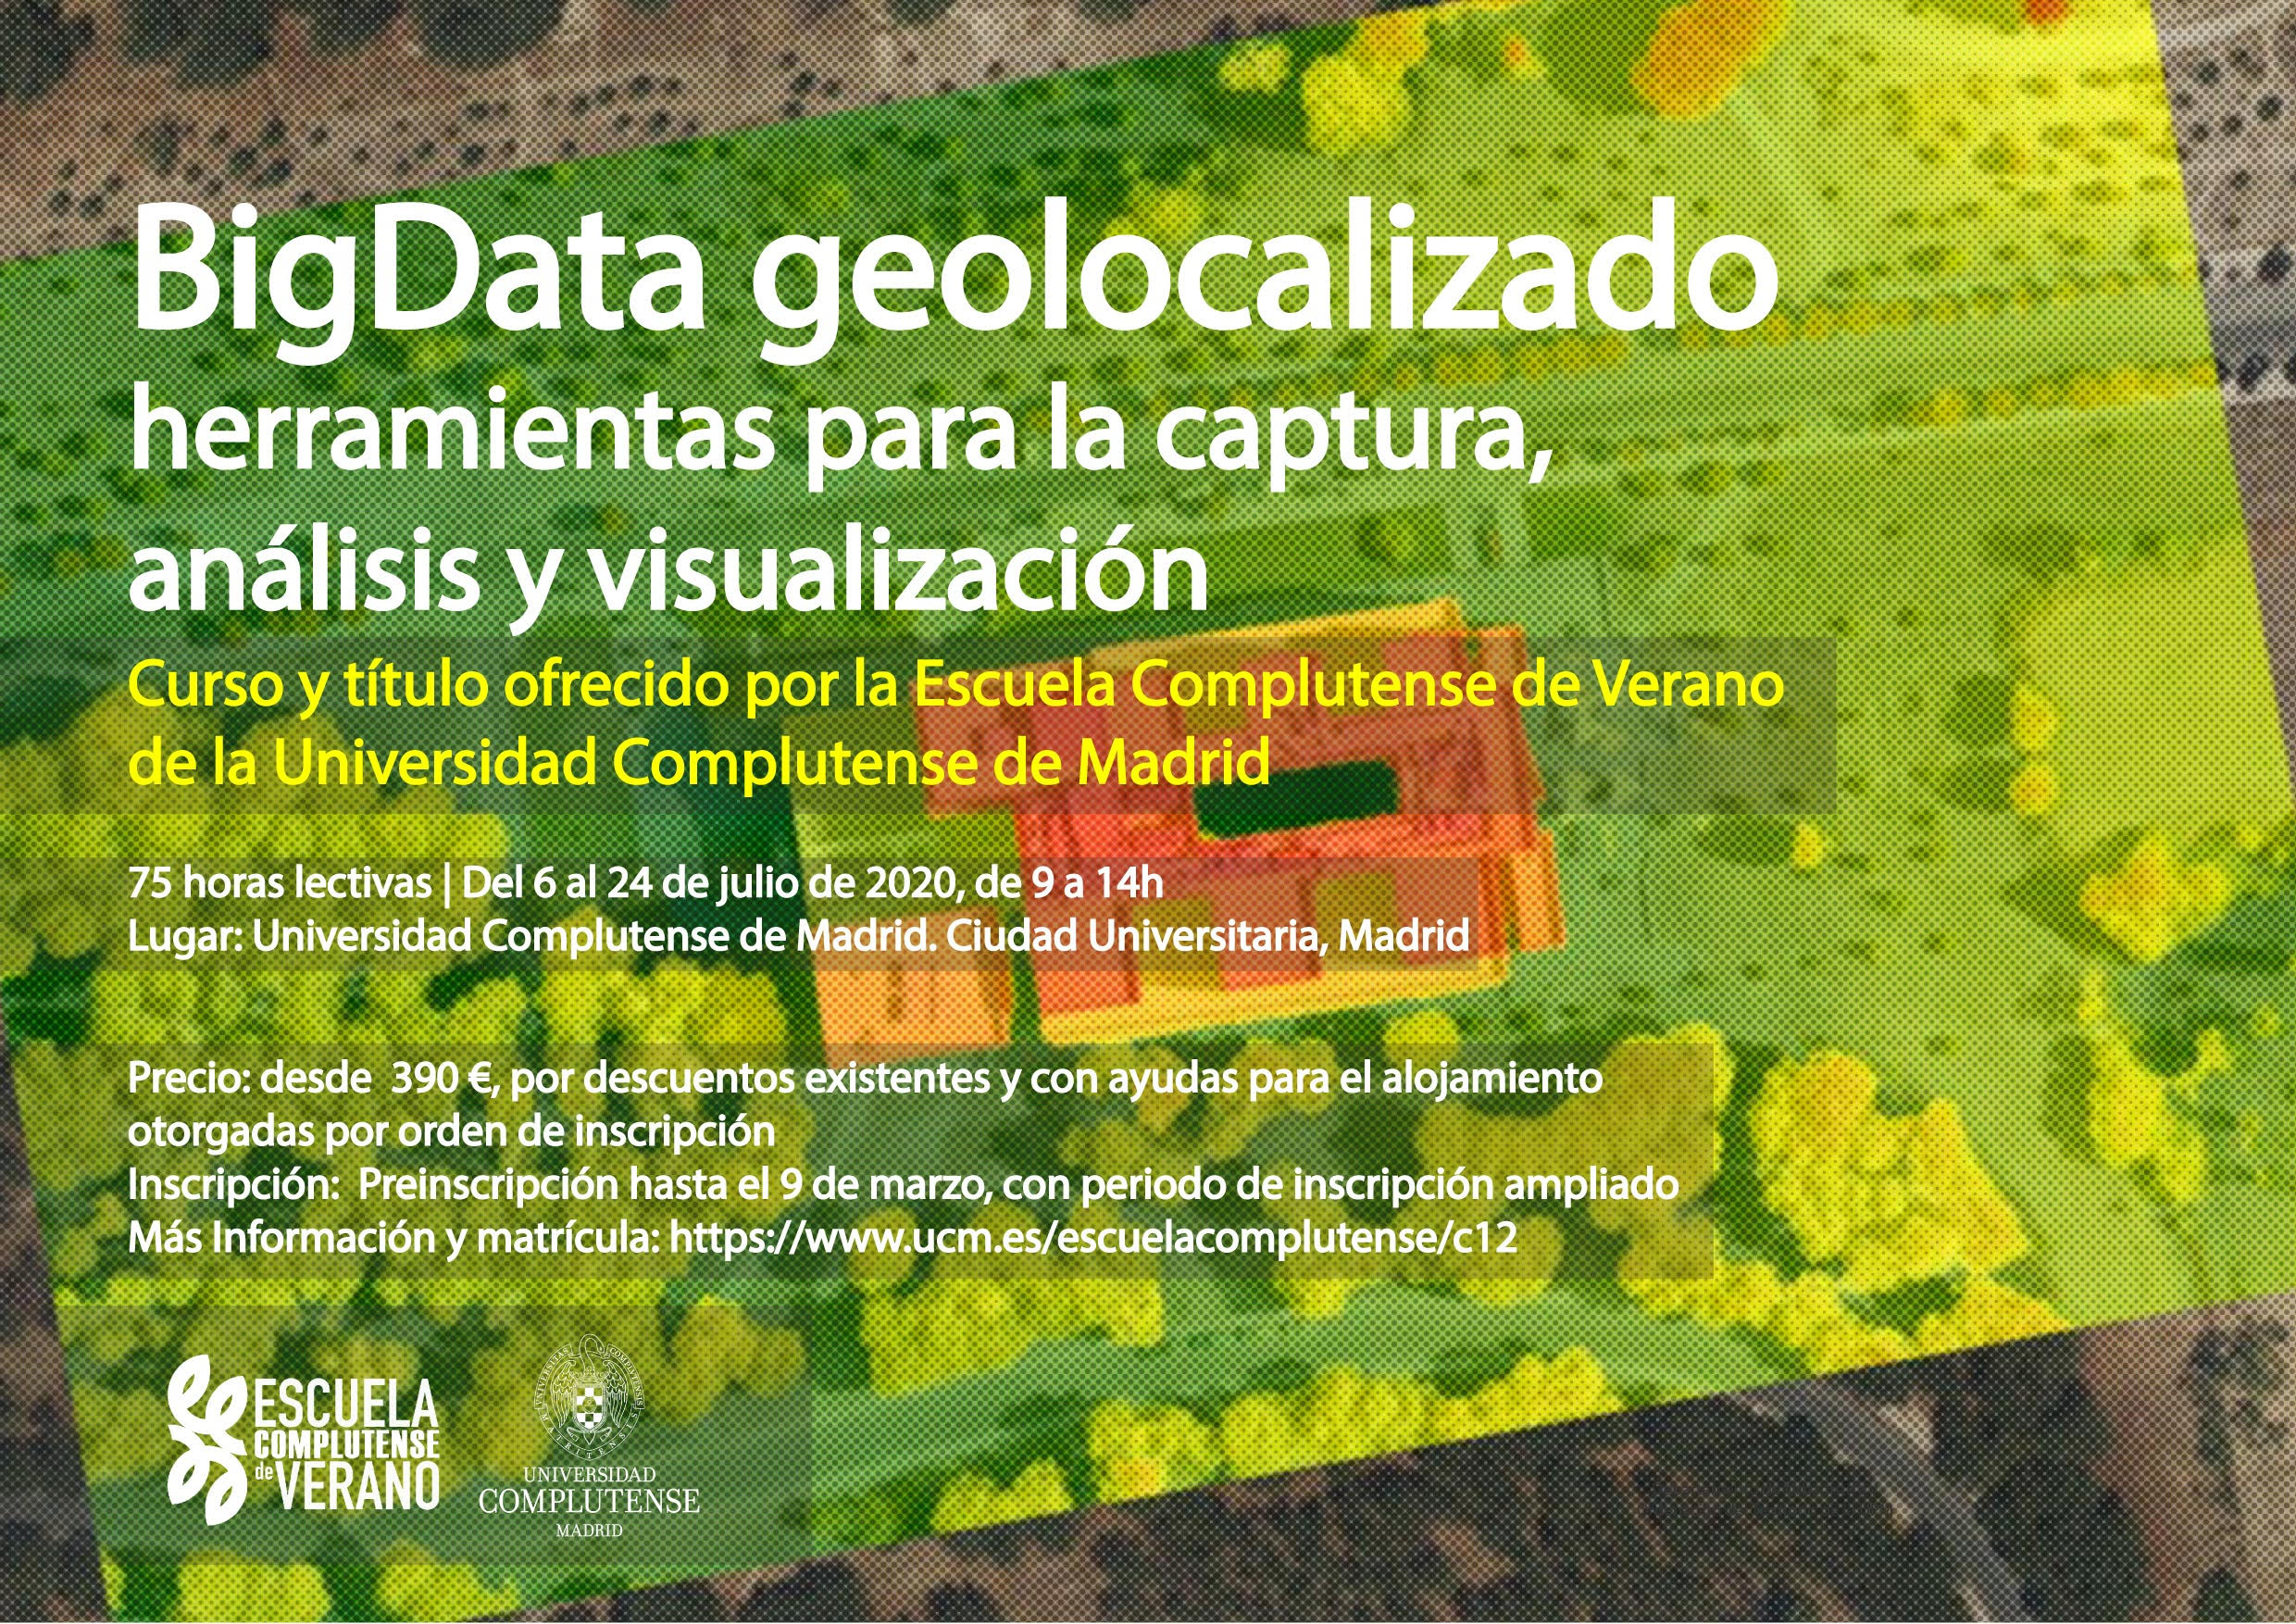 BigData geolocalizado: herramientas para la captura, análisis y visualización. Escuela Complutense de Verano. Del 6 al 24 de julio de 2020.